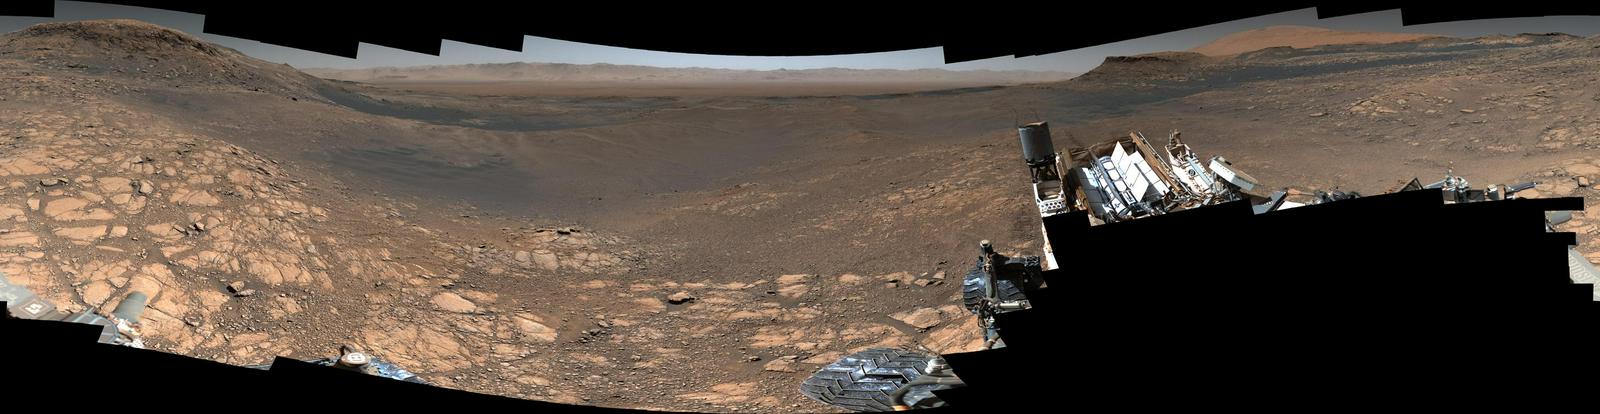 Panorama v nižji kakovosti. Foto: NASA/JPL-Caltech/MSSS